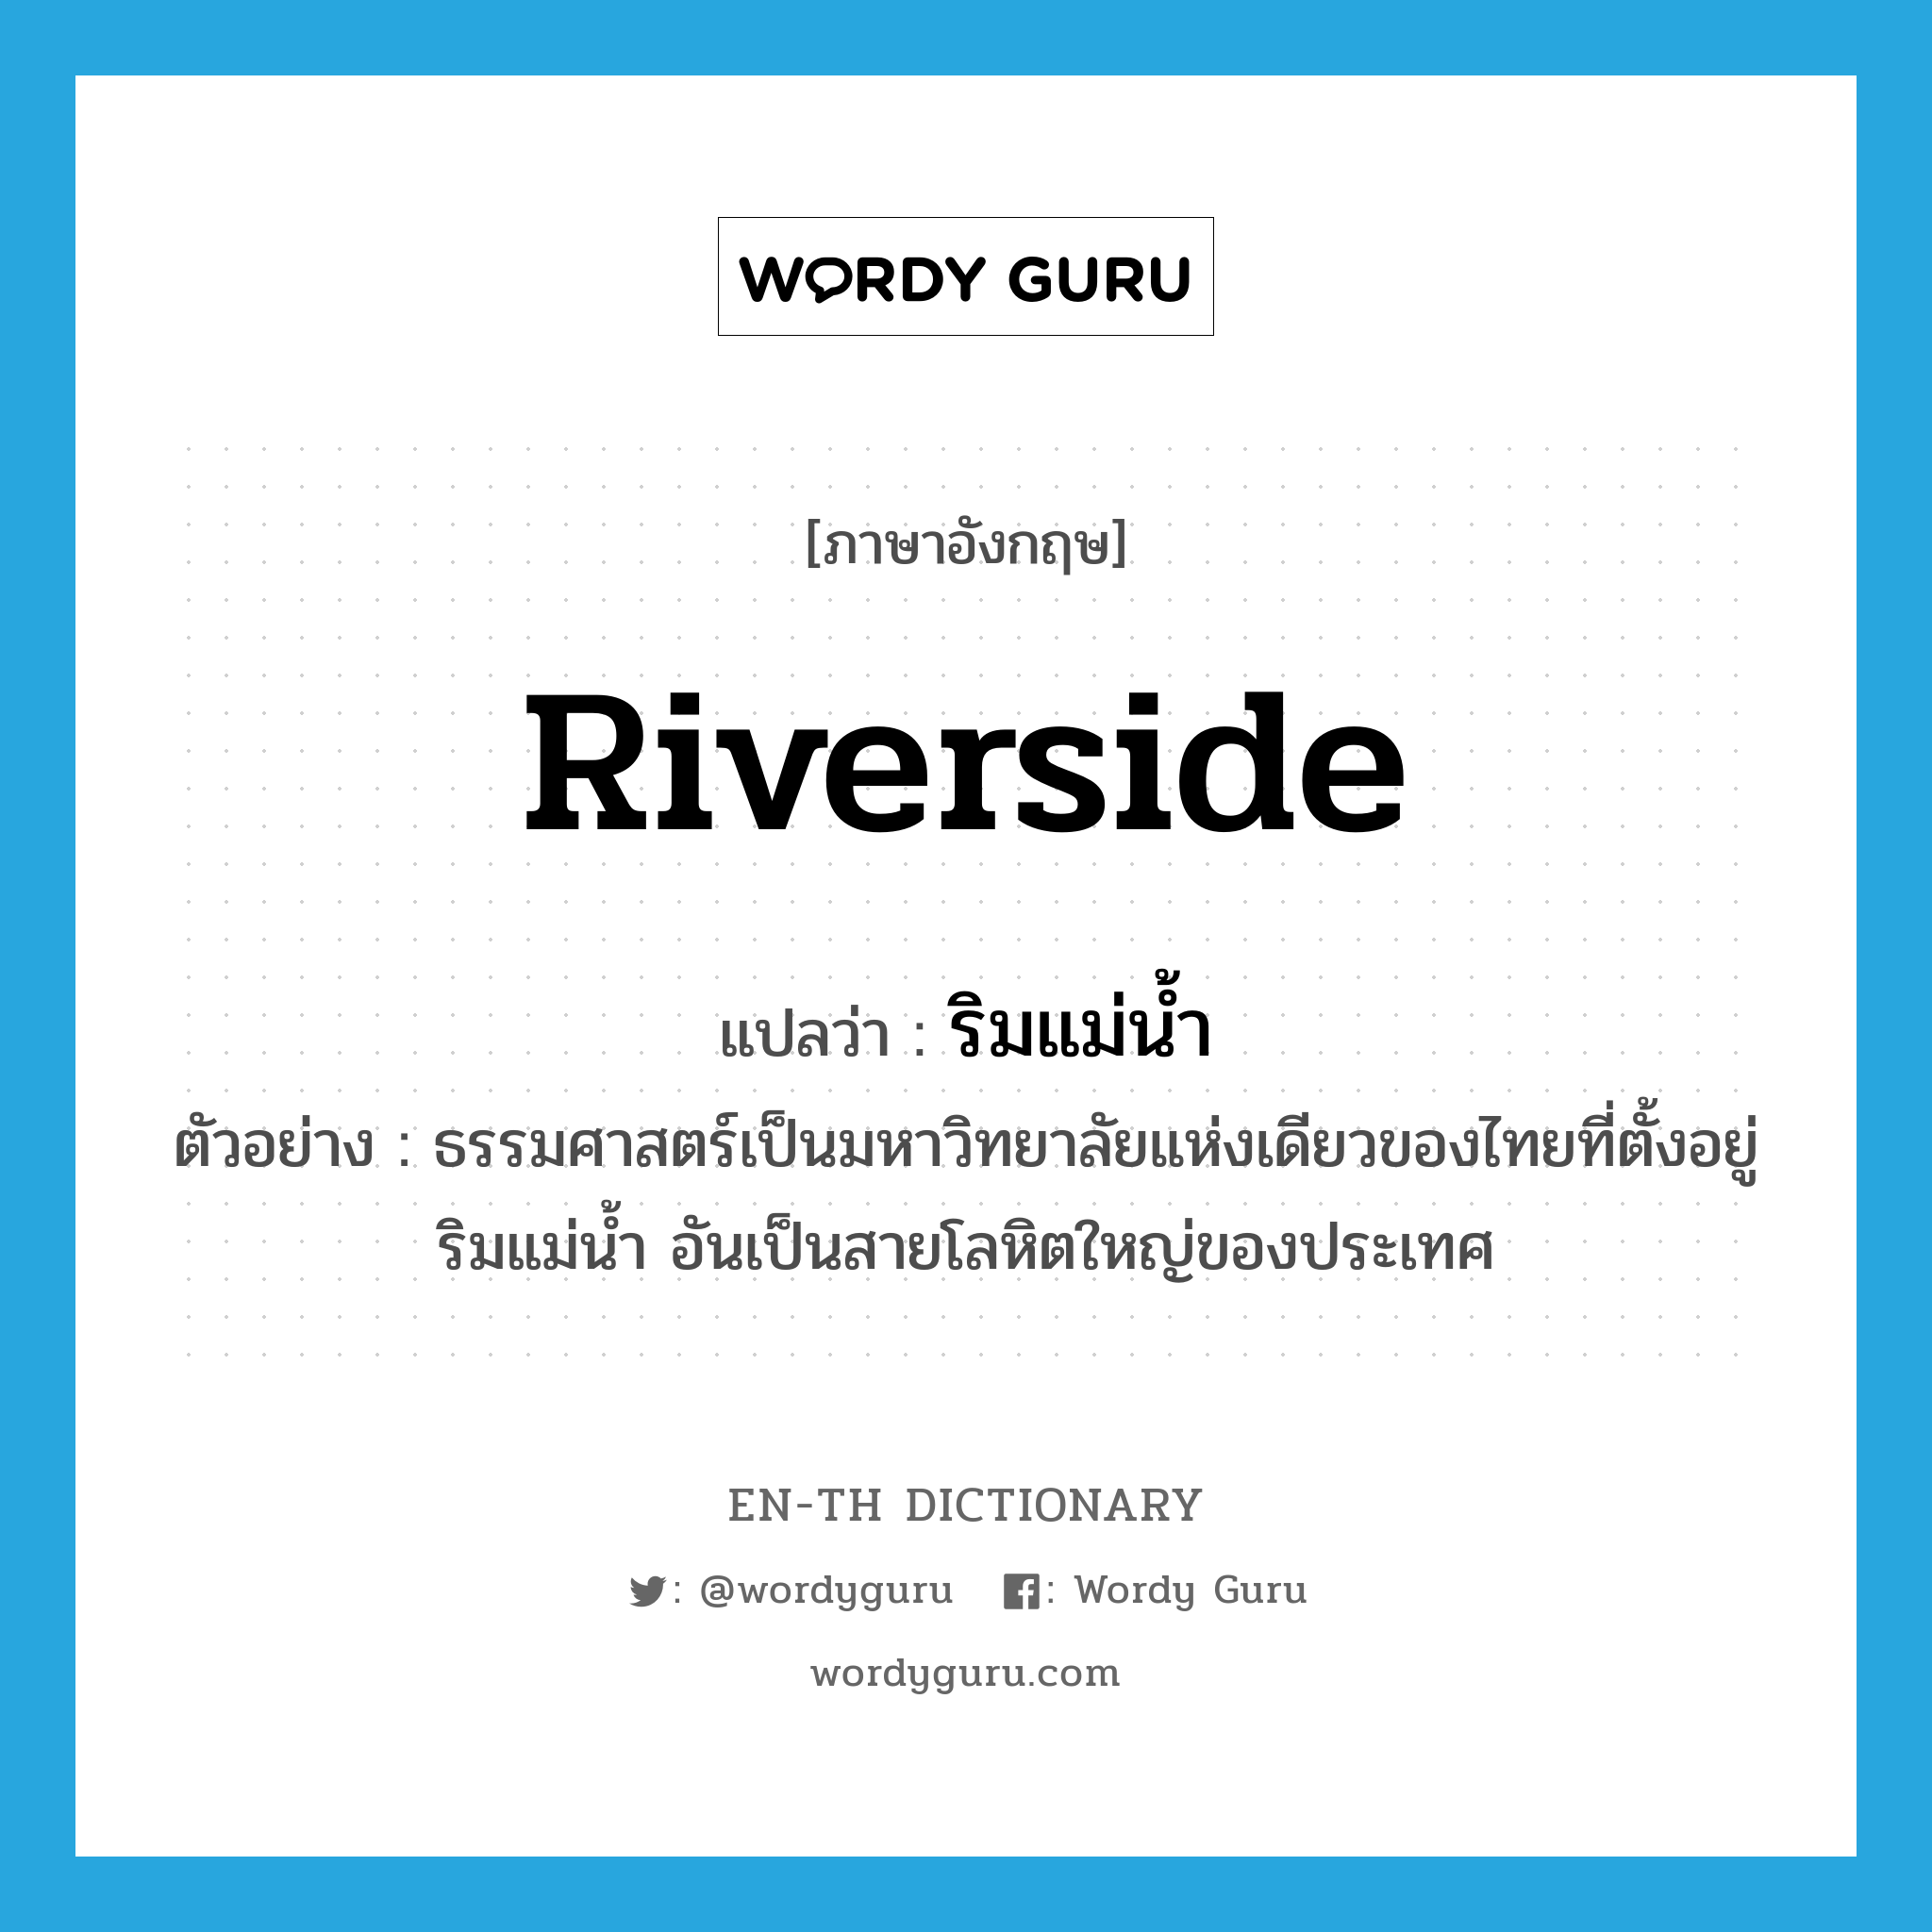 ริมแม่น้ำ ภาษาอังกฤษ?, คำศัพท์ภาษาอังกฤษ ริมแม่น้ำ แปลว่า riverside ประเภท N ตัวอย่าง ธรรมศาสตร์เป็นมหาวิทยาลัยแห่งเดียวของไทยที่ตั้งอยู่ริมแม่น้ำ อันเป็นสายโลหิตใหญ่ของประเทศ หมวด N